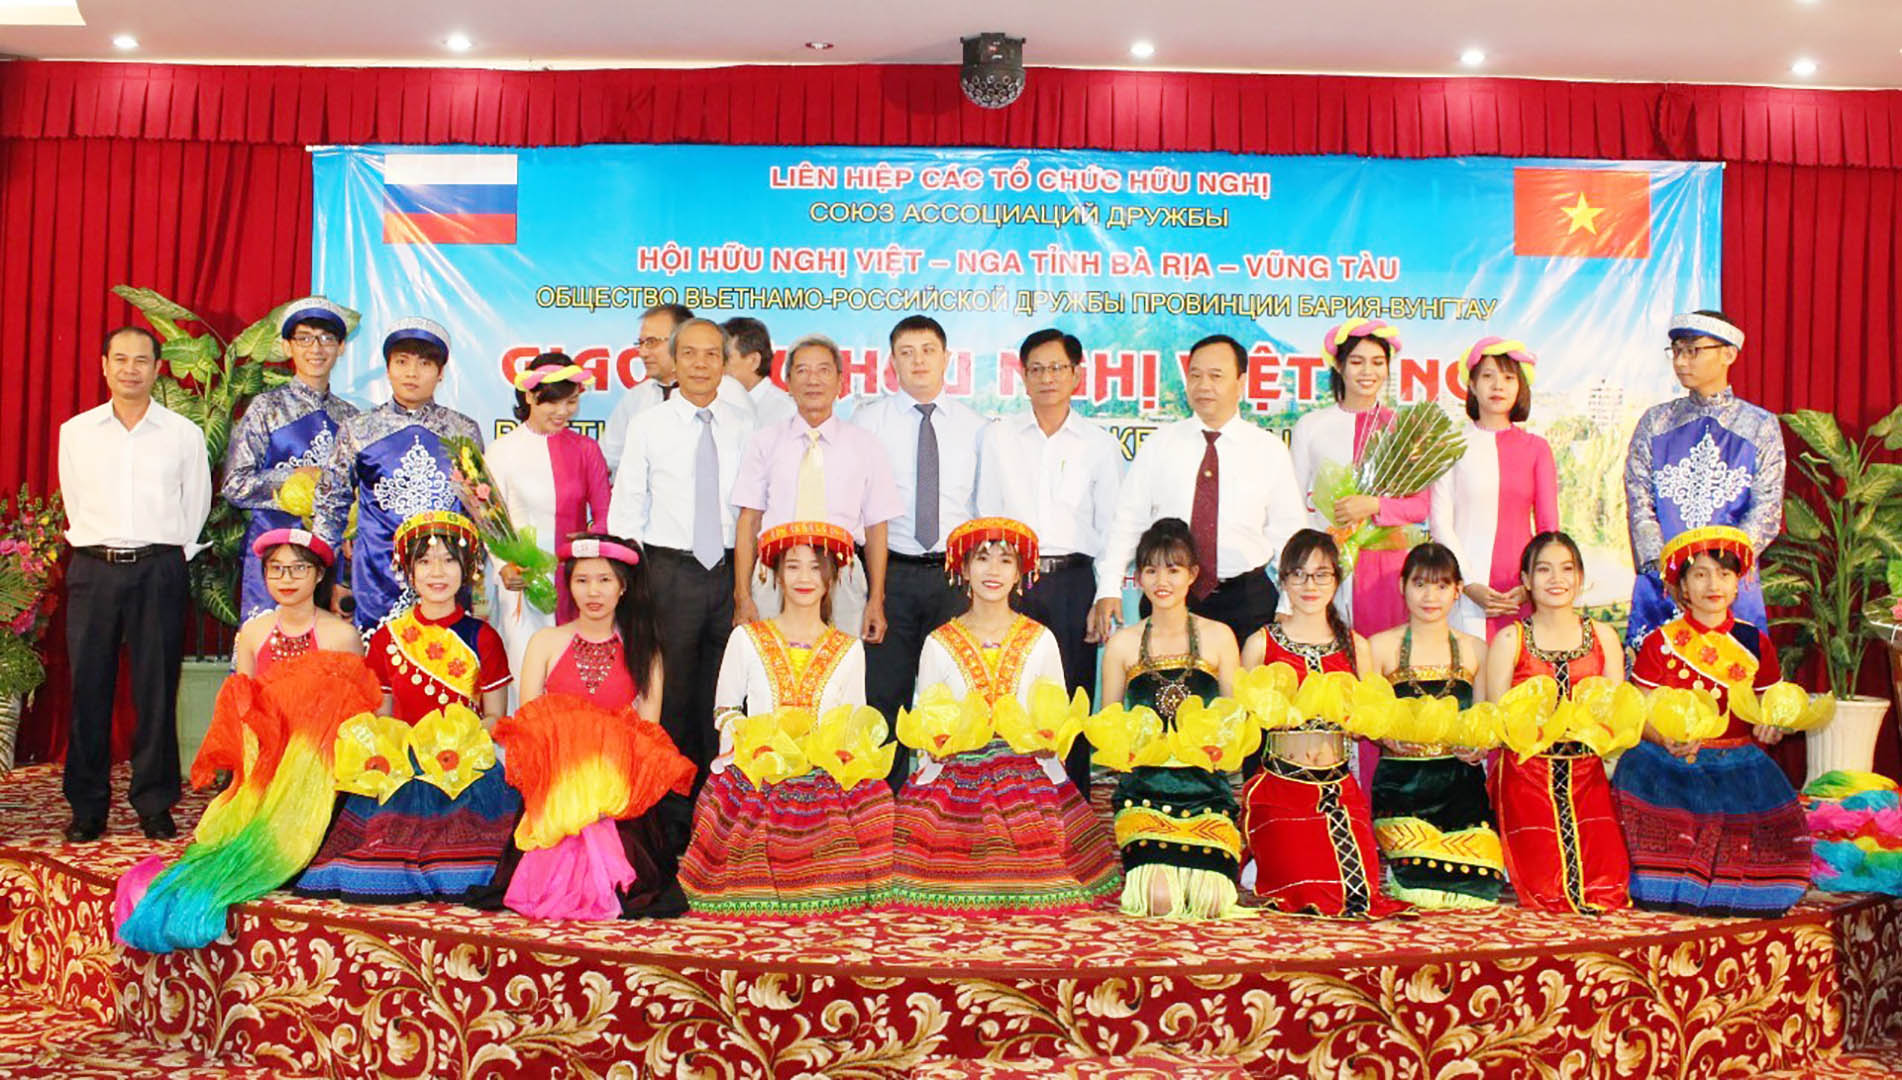 Các đại biểu người Việt-Nga chụp hình lưu niệm trong một chương trình giao lưu hữu nghị.